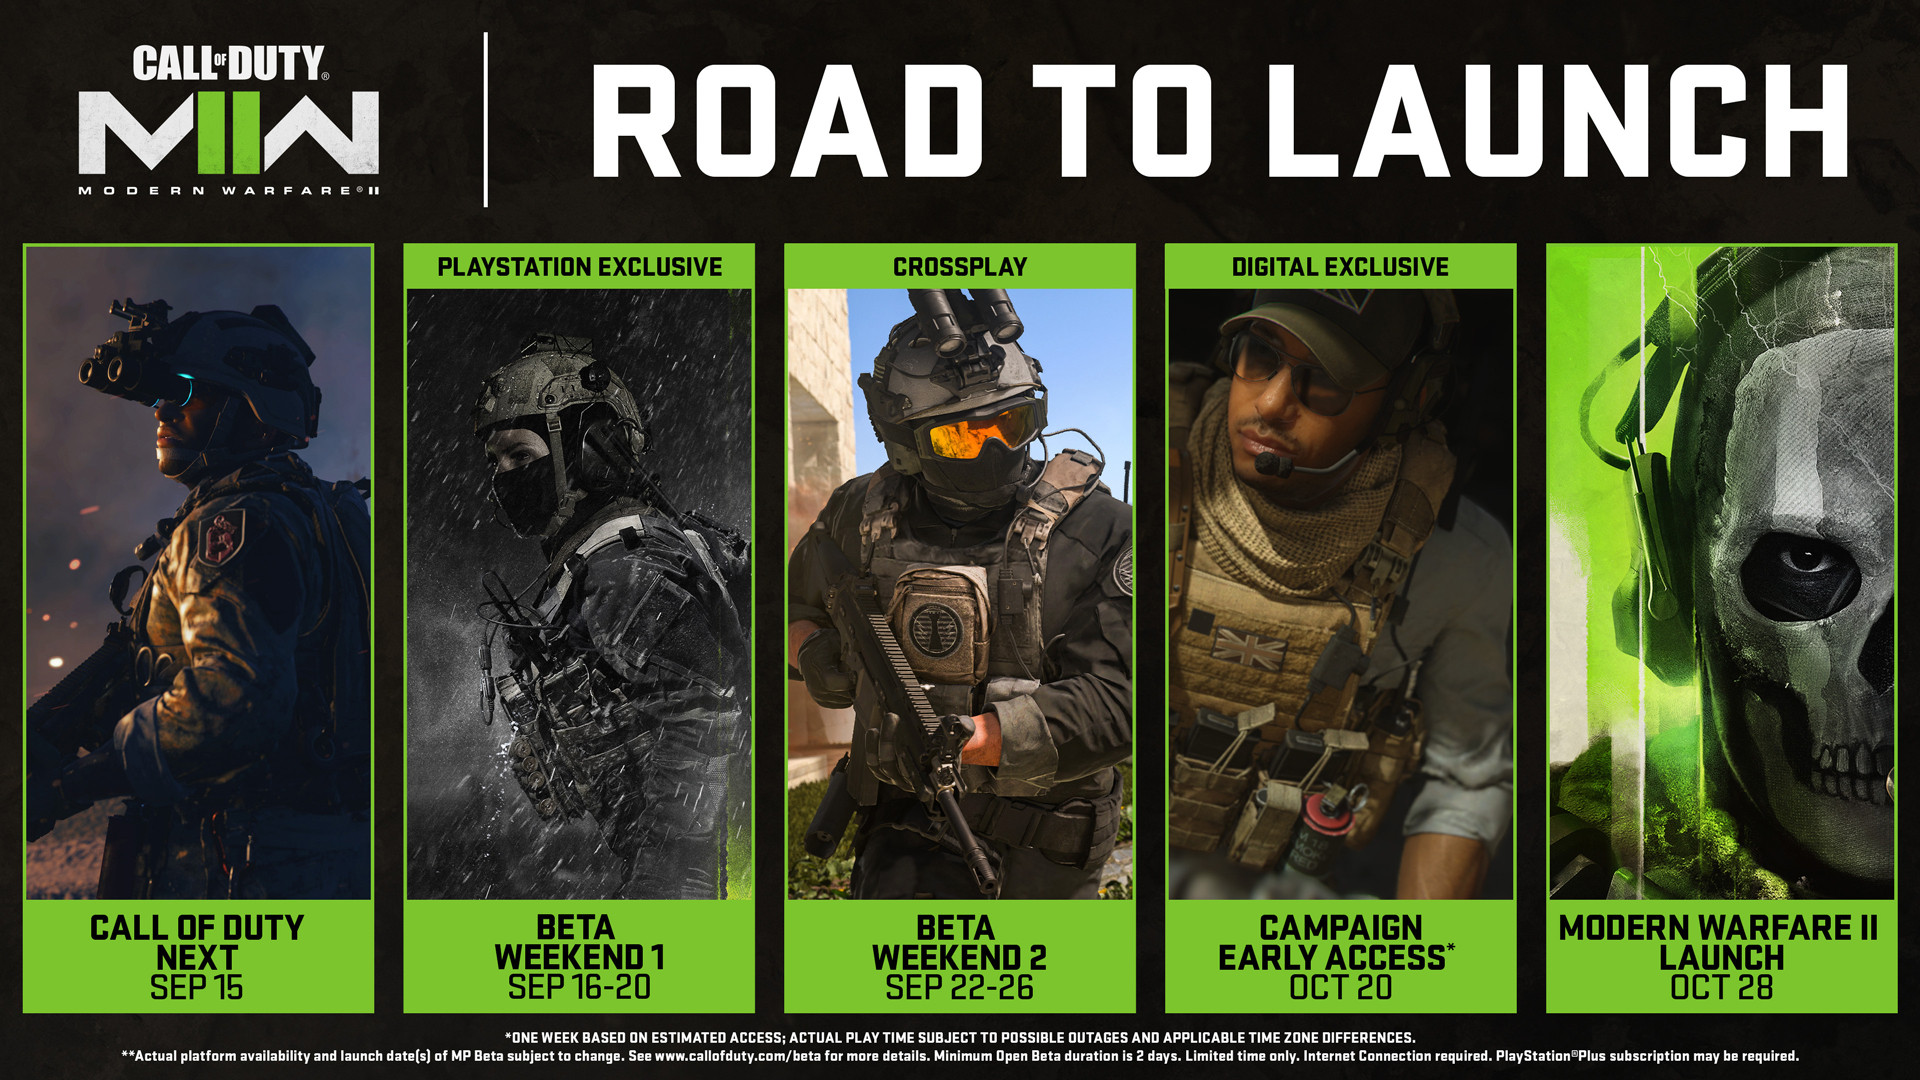 По предзаказу в кампанию Call of Duty: Modern Warfare II можно будет начать играть раньше на неделю